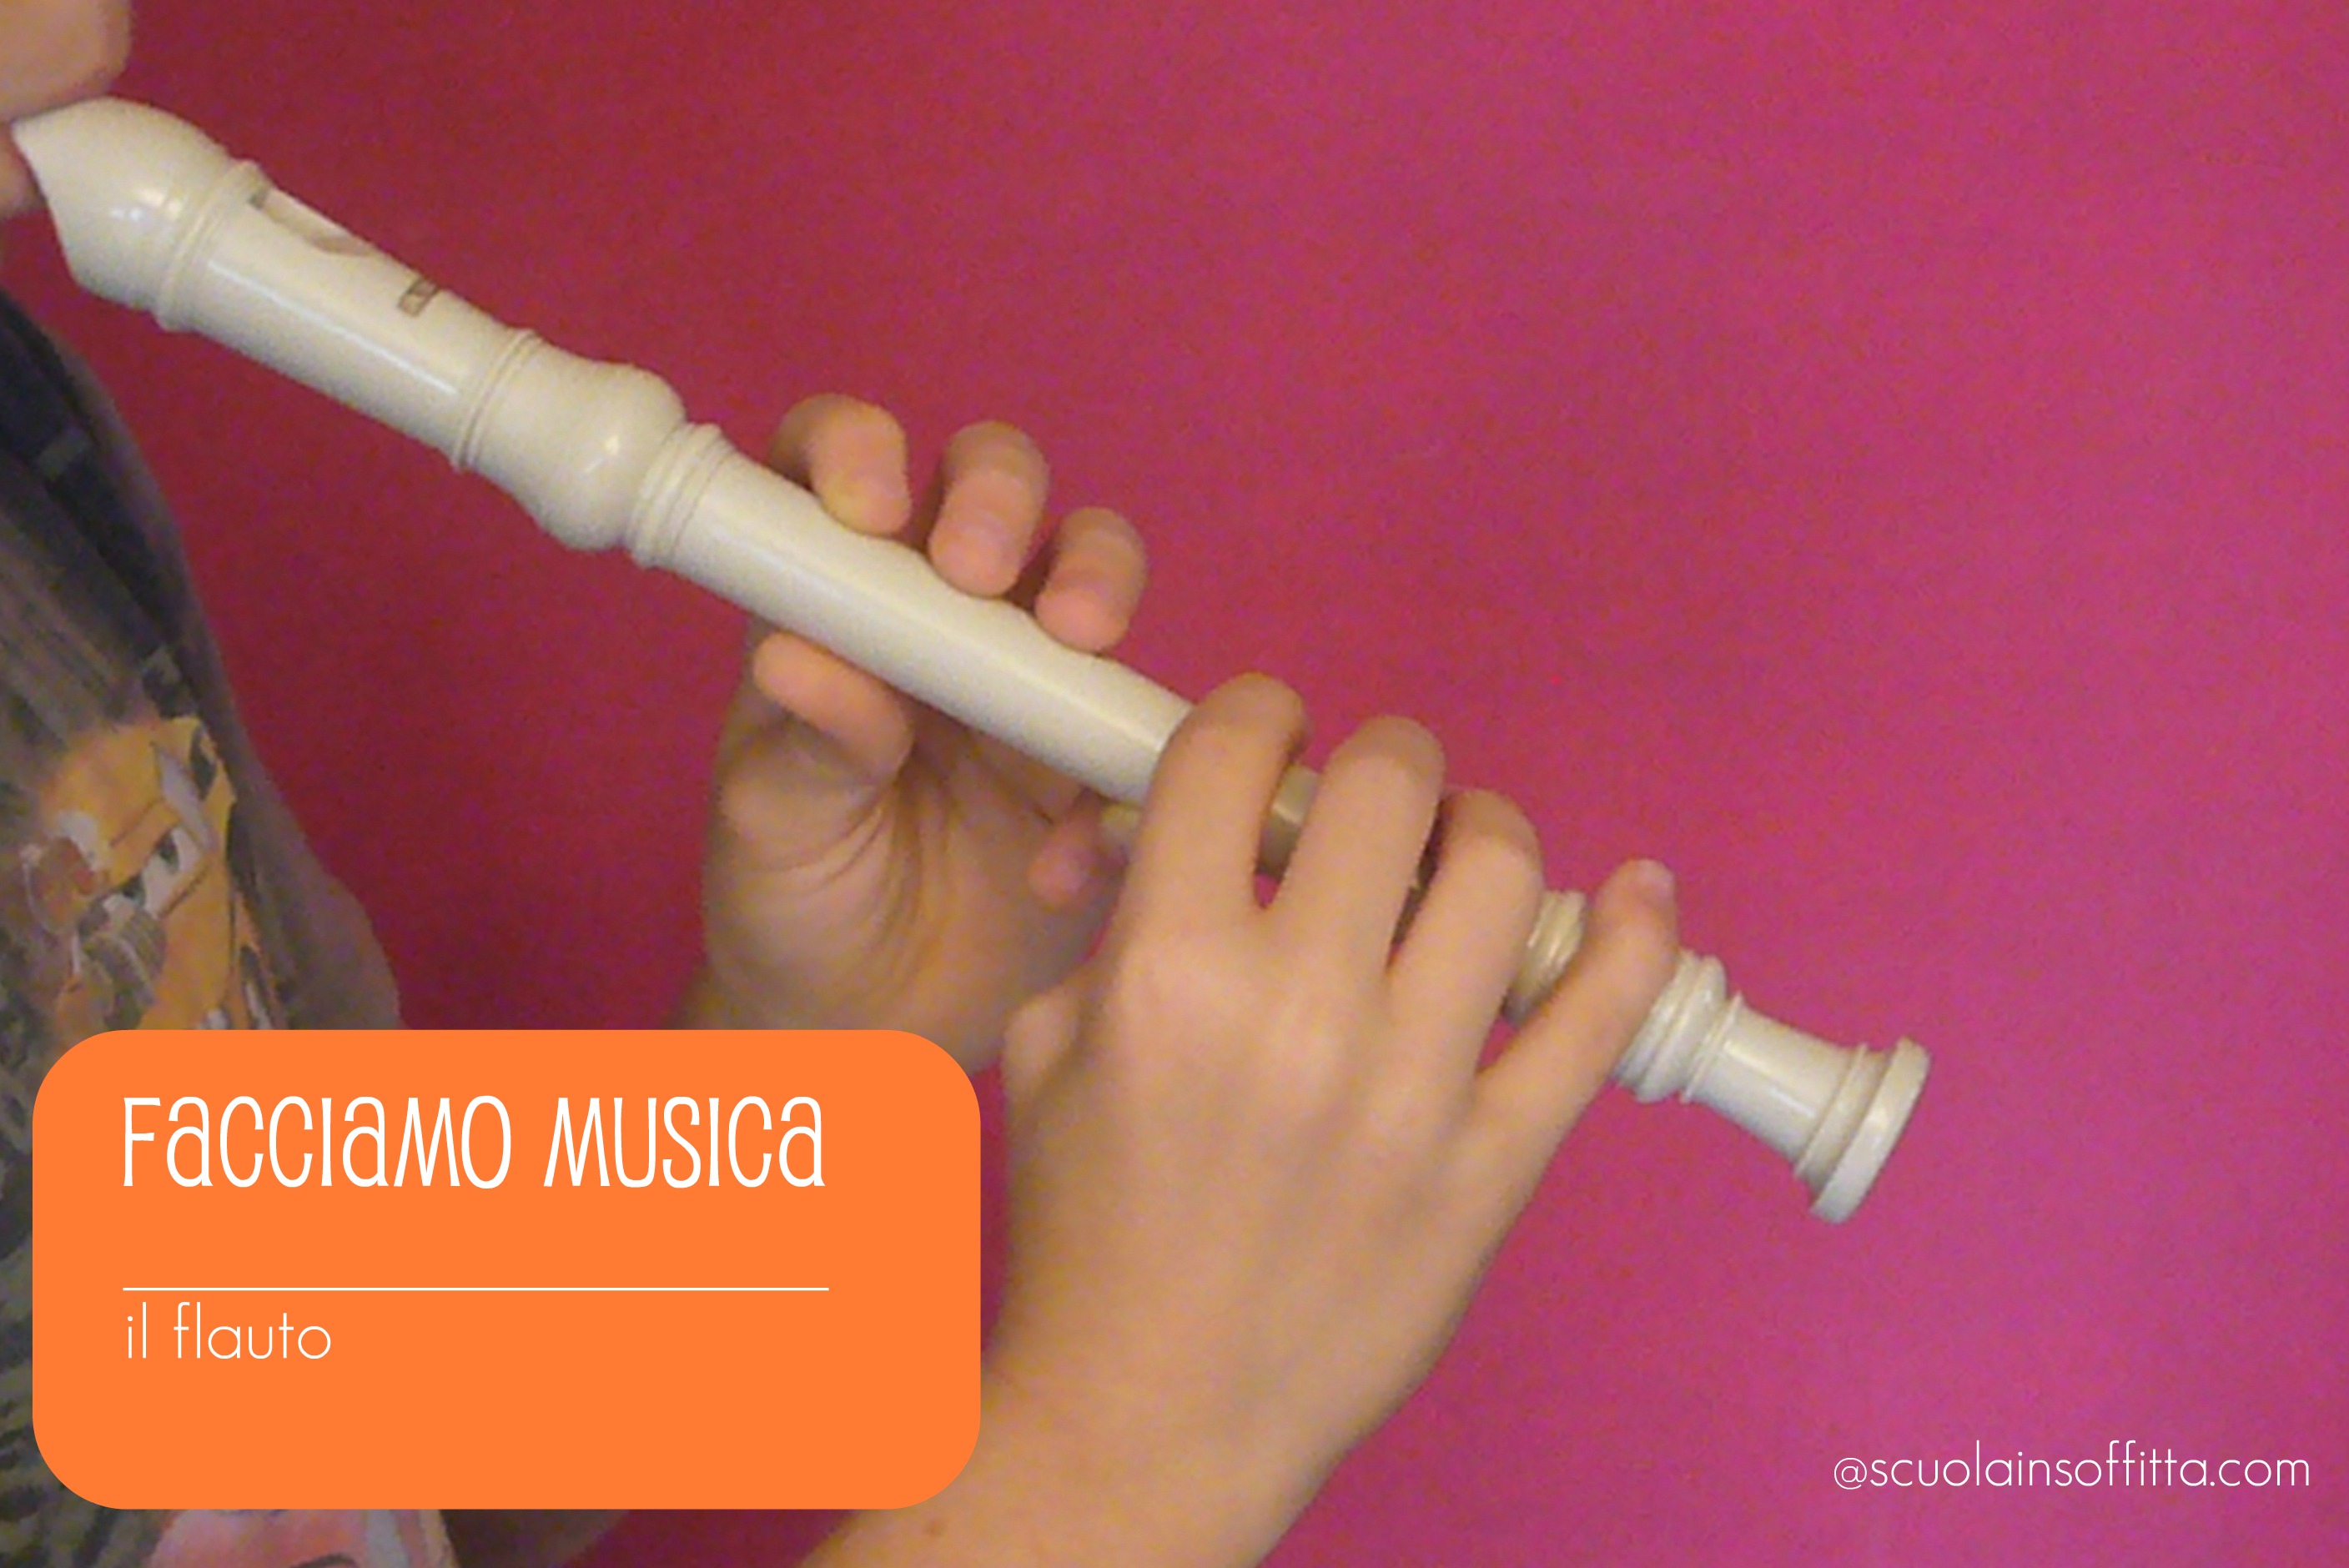 Facciamo musica! il flauto dolce - Scuolainsoffitta